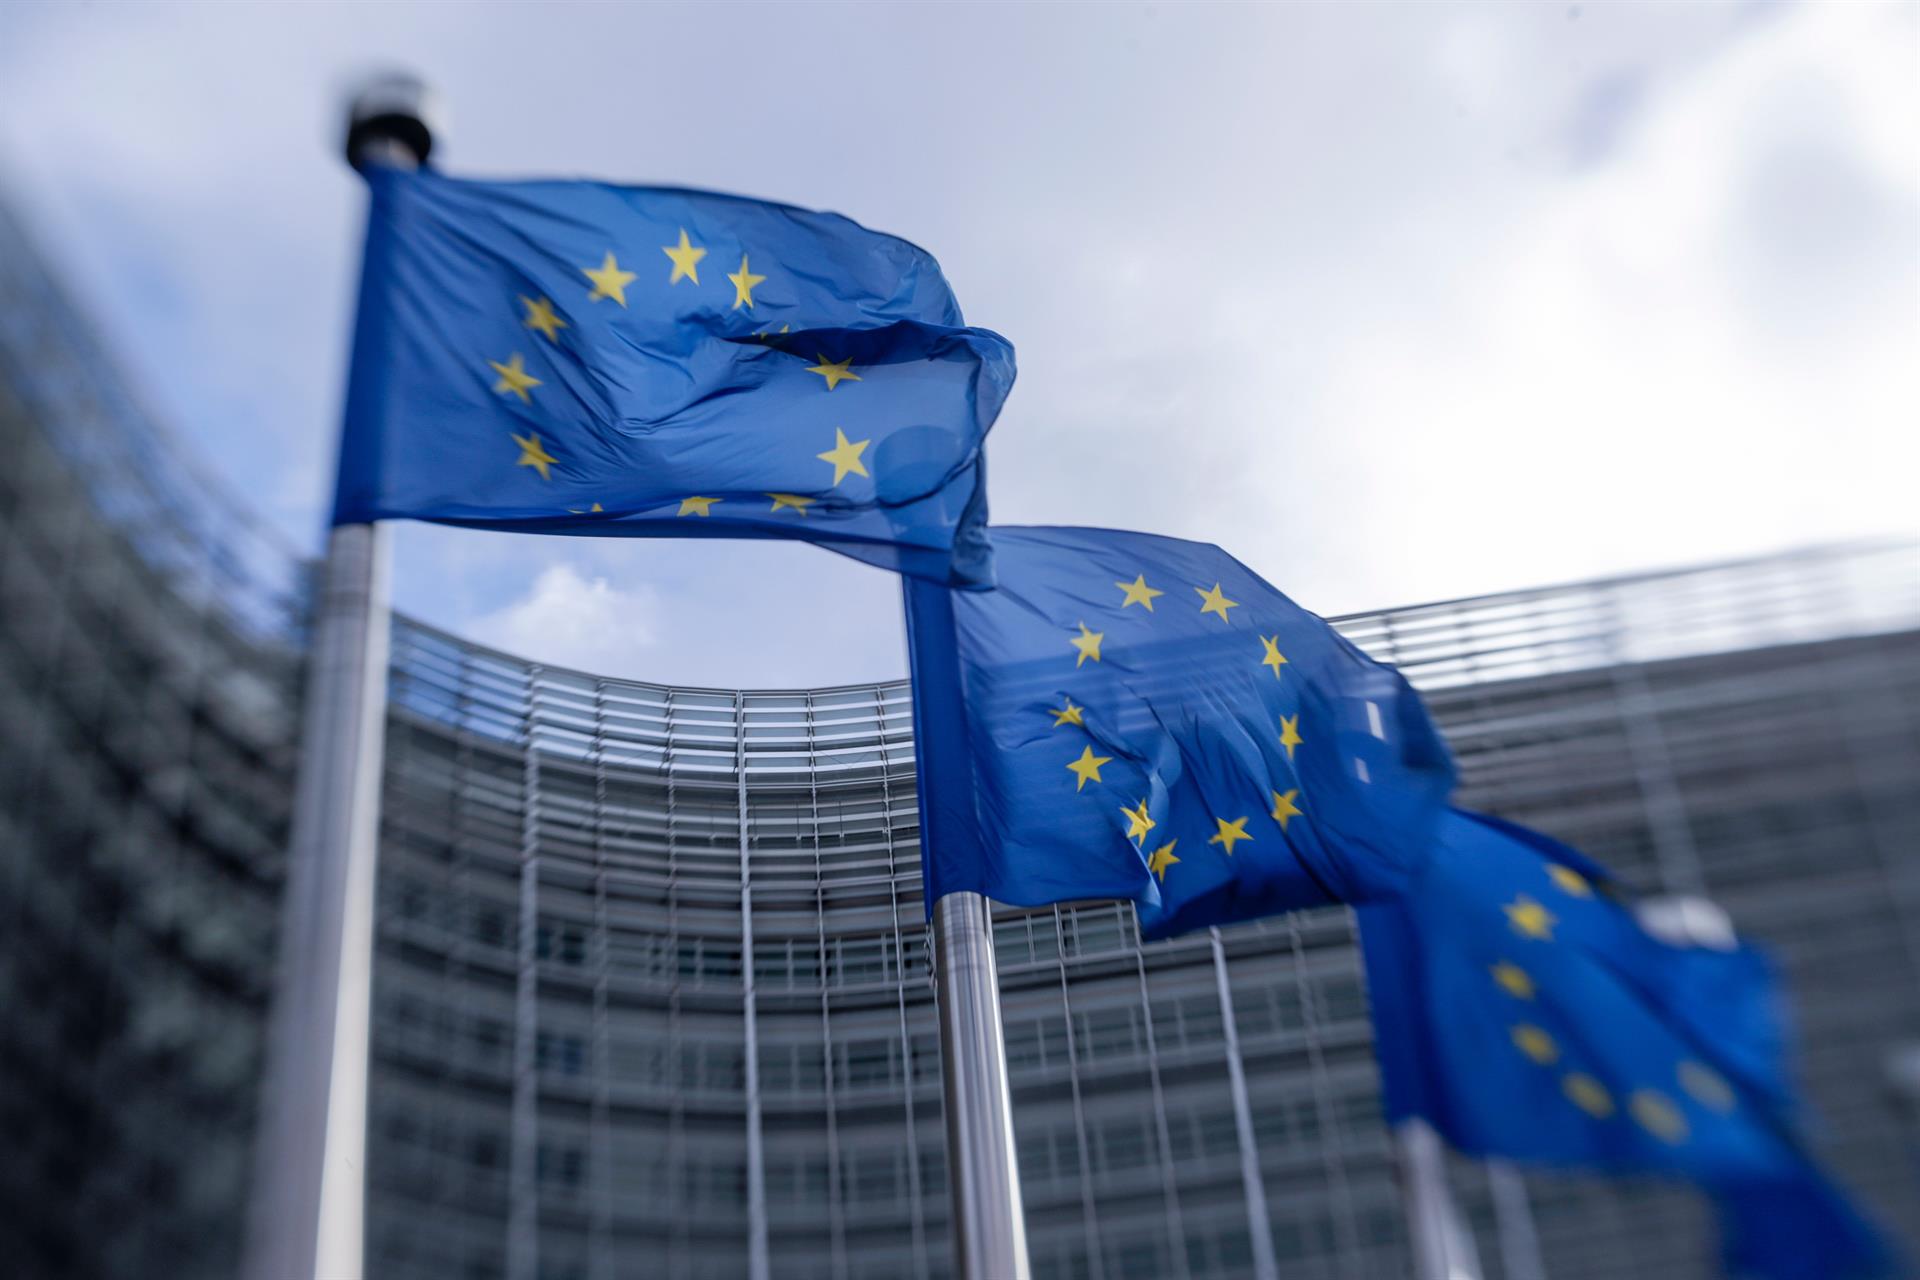 Banderas de la Unión Europea frente la sede de la Comisión Europea, en una imagen de archivo. EFE/EPA/OLIVIER HOSLET